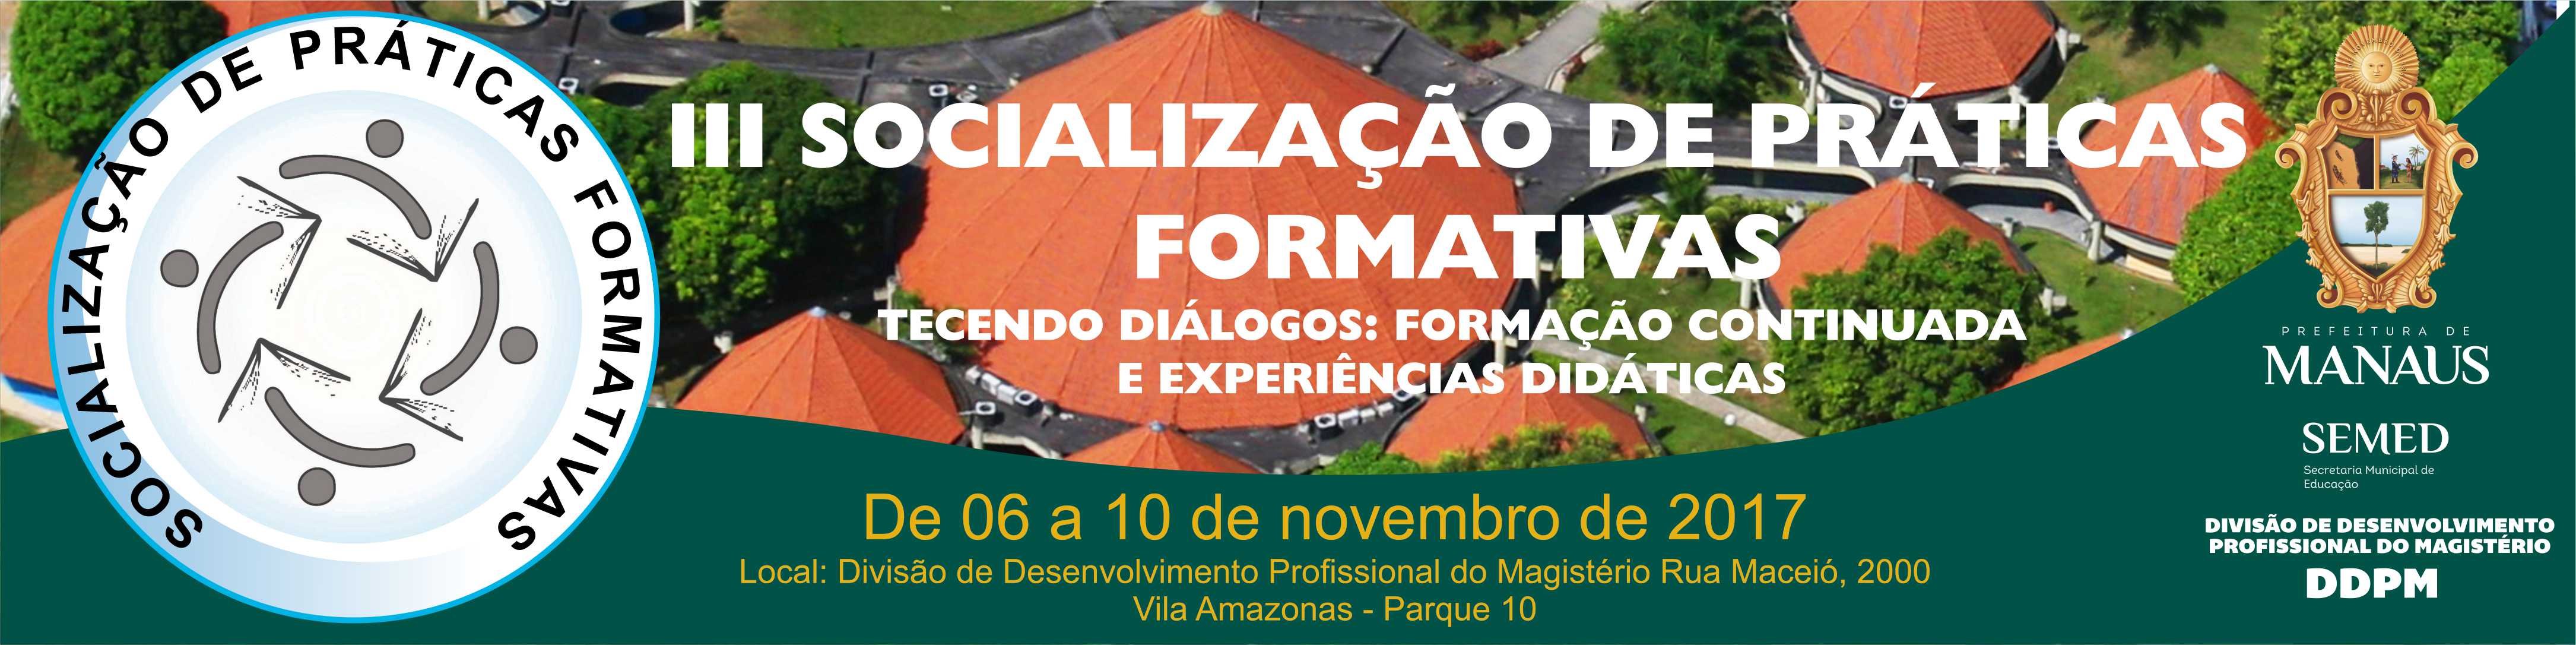 III Socialização de Práticas Formativas  Tecendo Diálogos: Formação continuada e Experiências Didáticas.